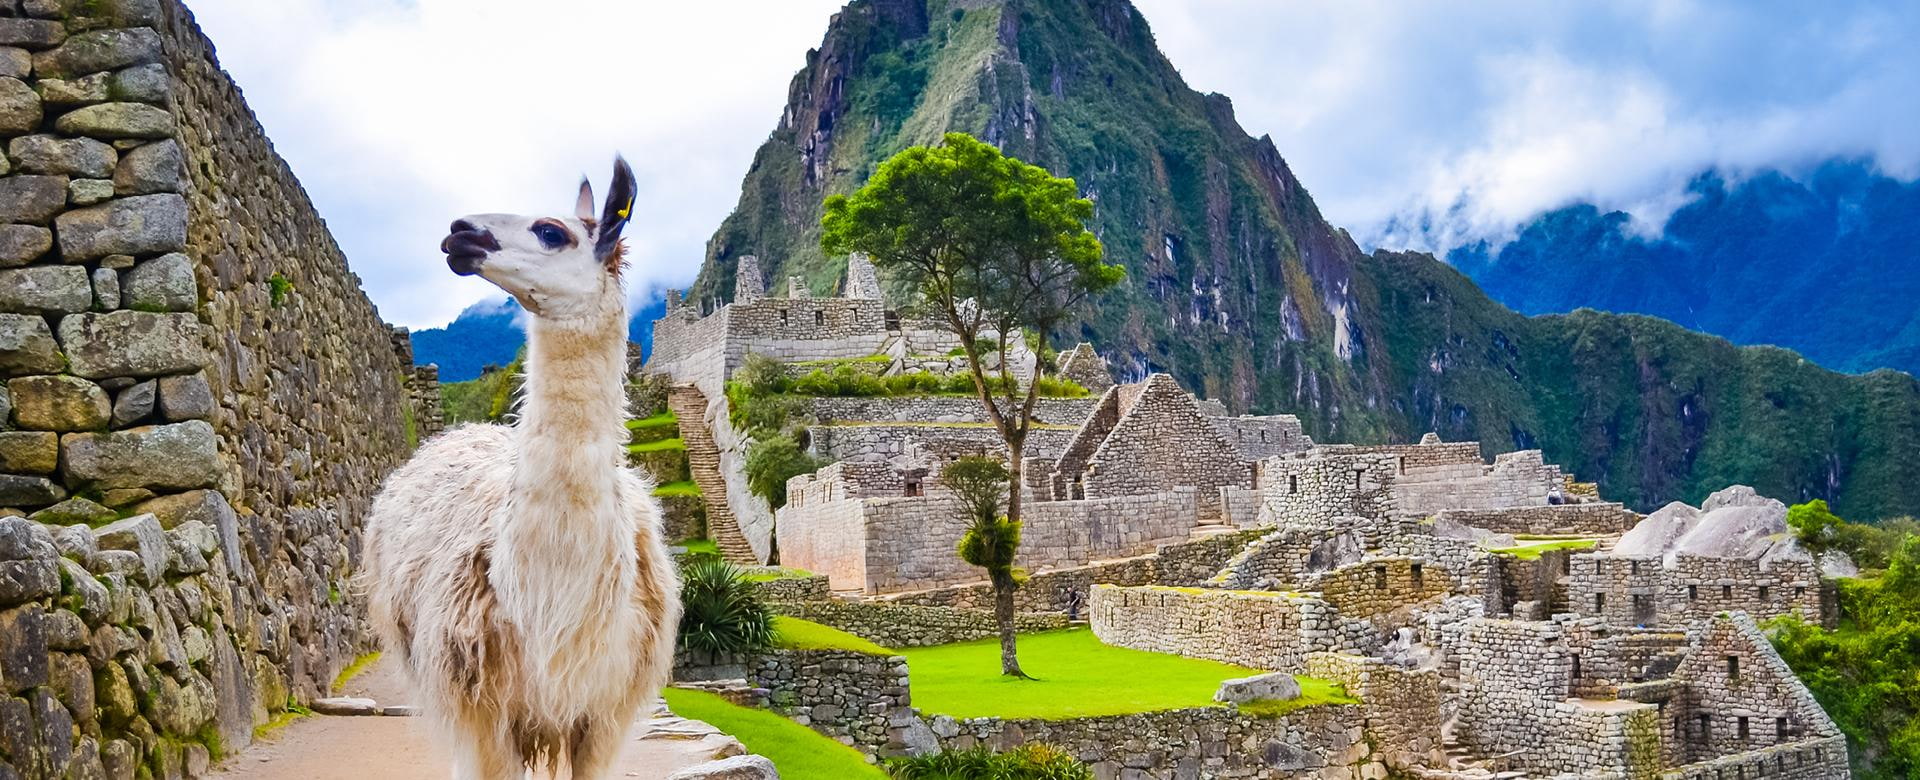 Lama im Machu Picchu